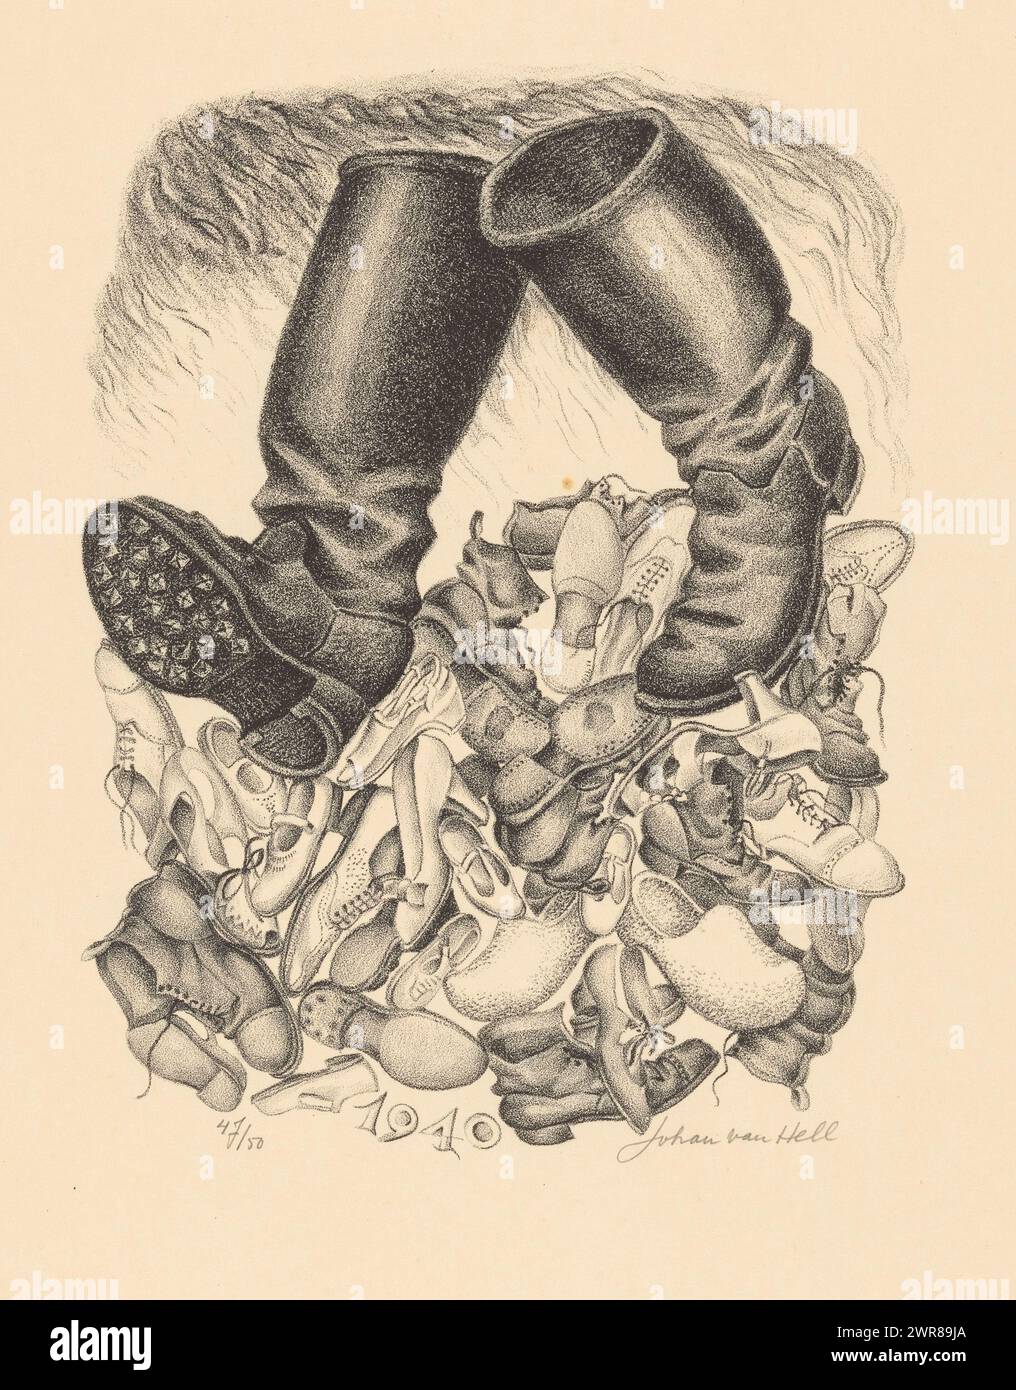 Boots (titre original), Une paire de bottes qui vont sur des chaussures, des escarpins et des sabots, comme un symbole de la domination allemande sur le peuple néerlandais. Ci-dessous toute l'année 1940., imprimeur : Johan van Hell, (signé par l'artiste), 1940 - 1945, papier, hauteur 448 mm × largeur 328 mm, impression Banque D'Images